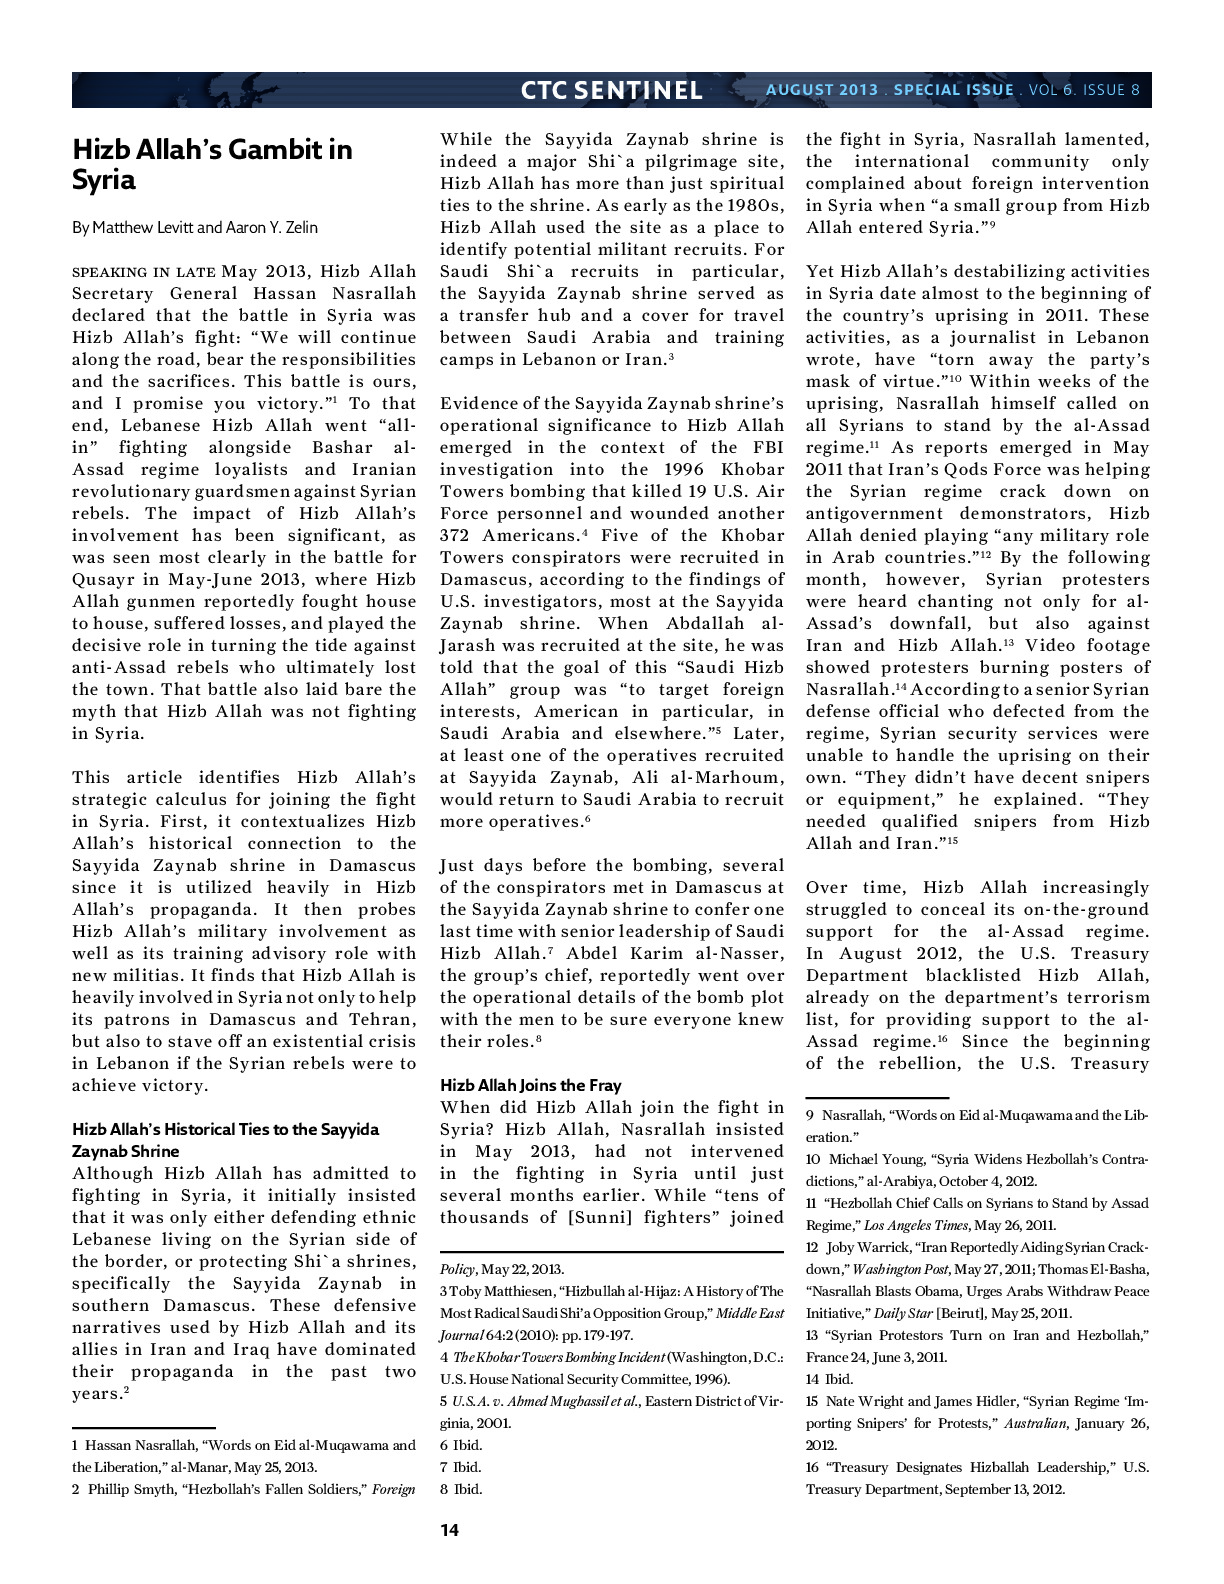 LevittZelin-20130827-CTCSentinel.pdf